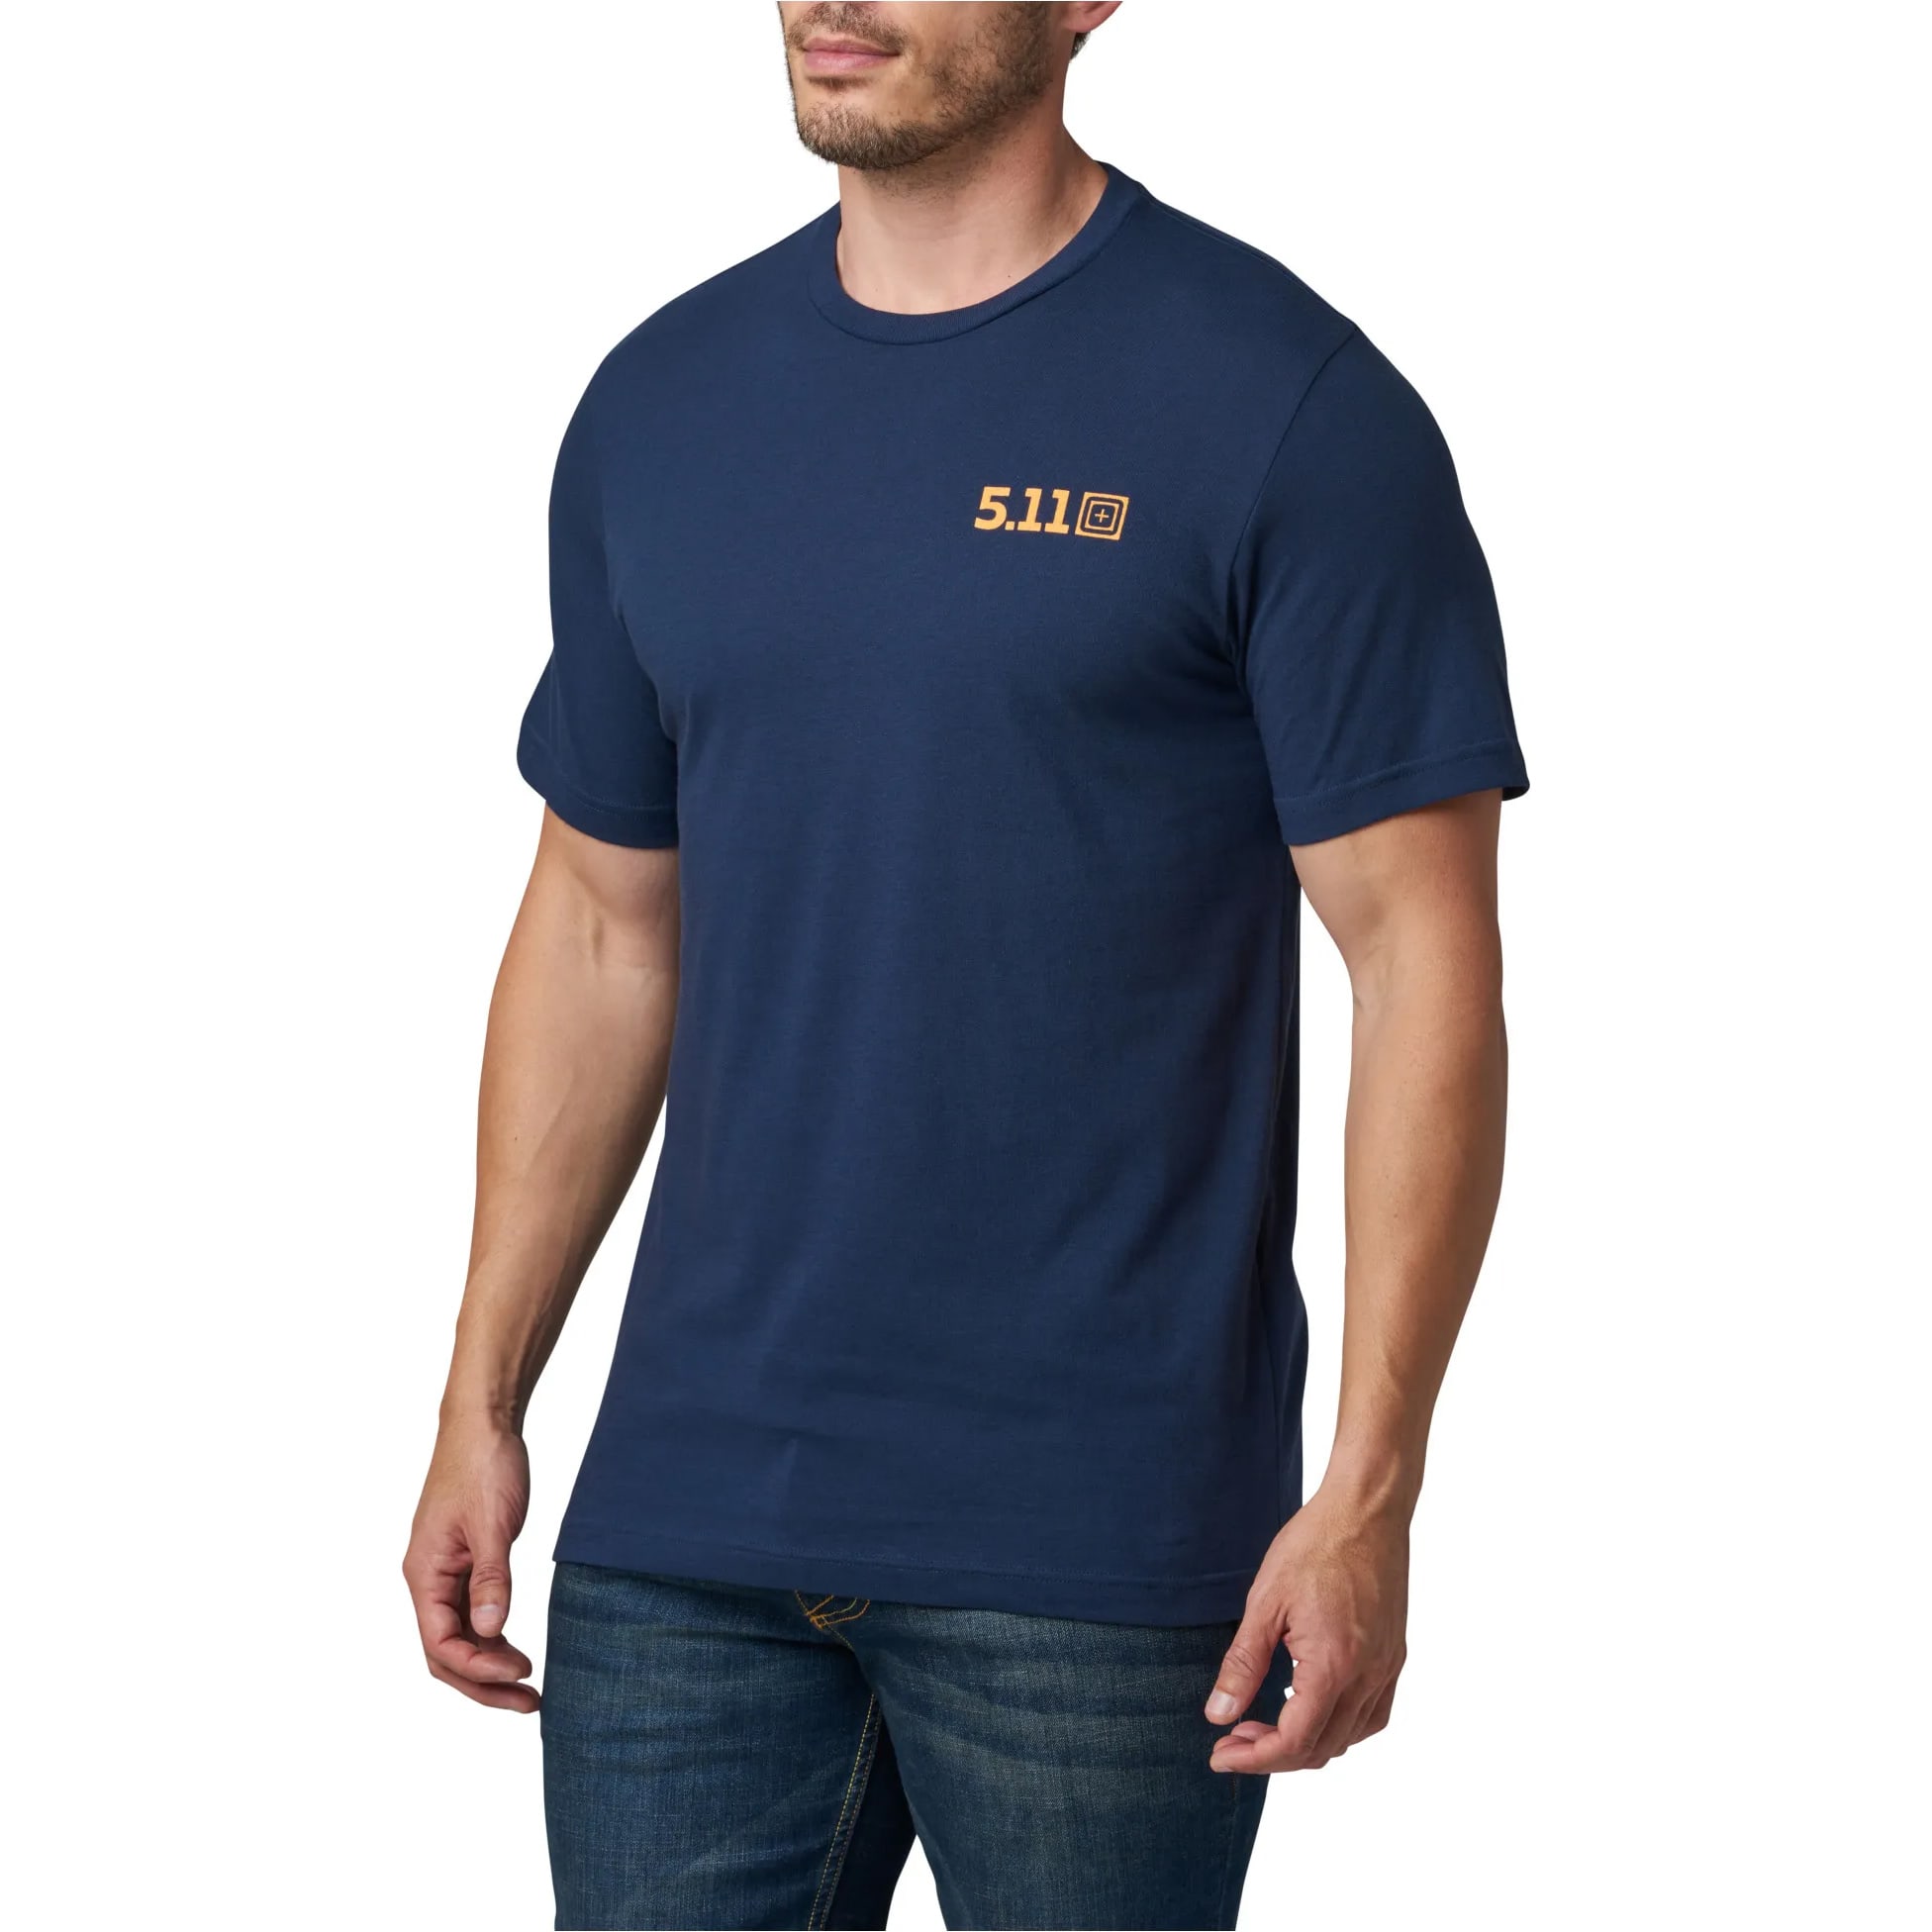 5.11® Men’s Overlander Sunset Short-Sleeve T-Shirt